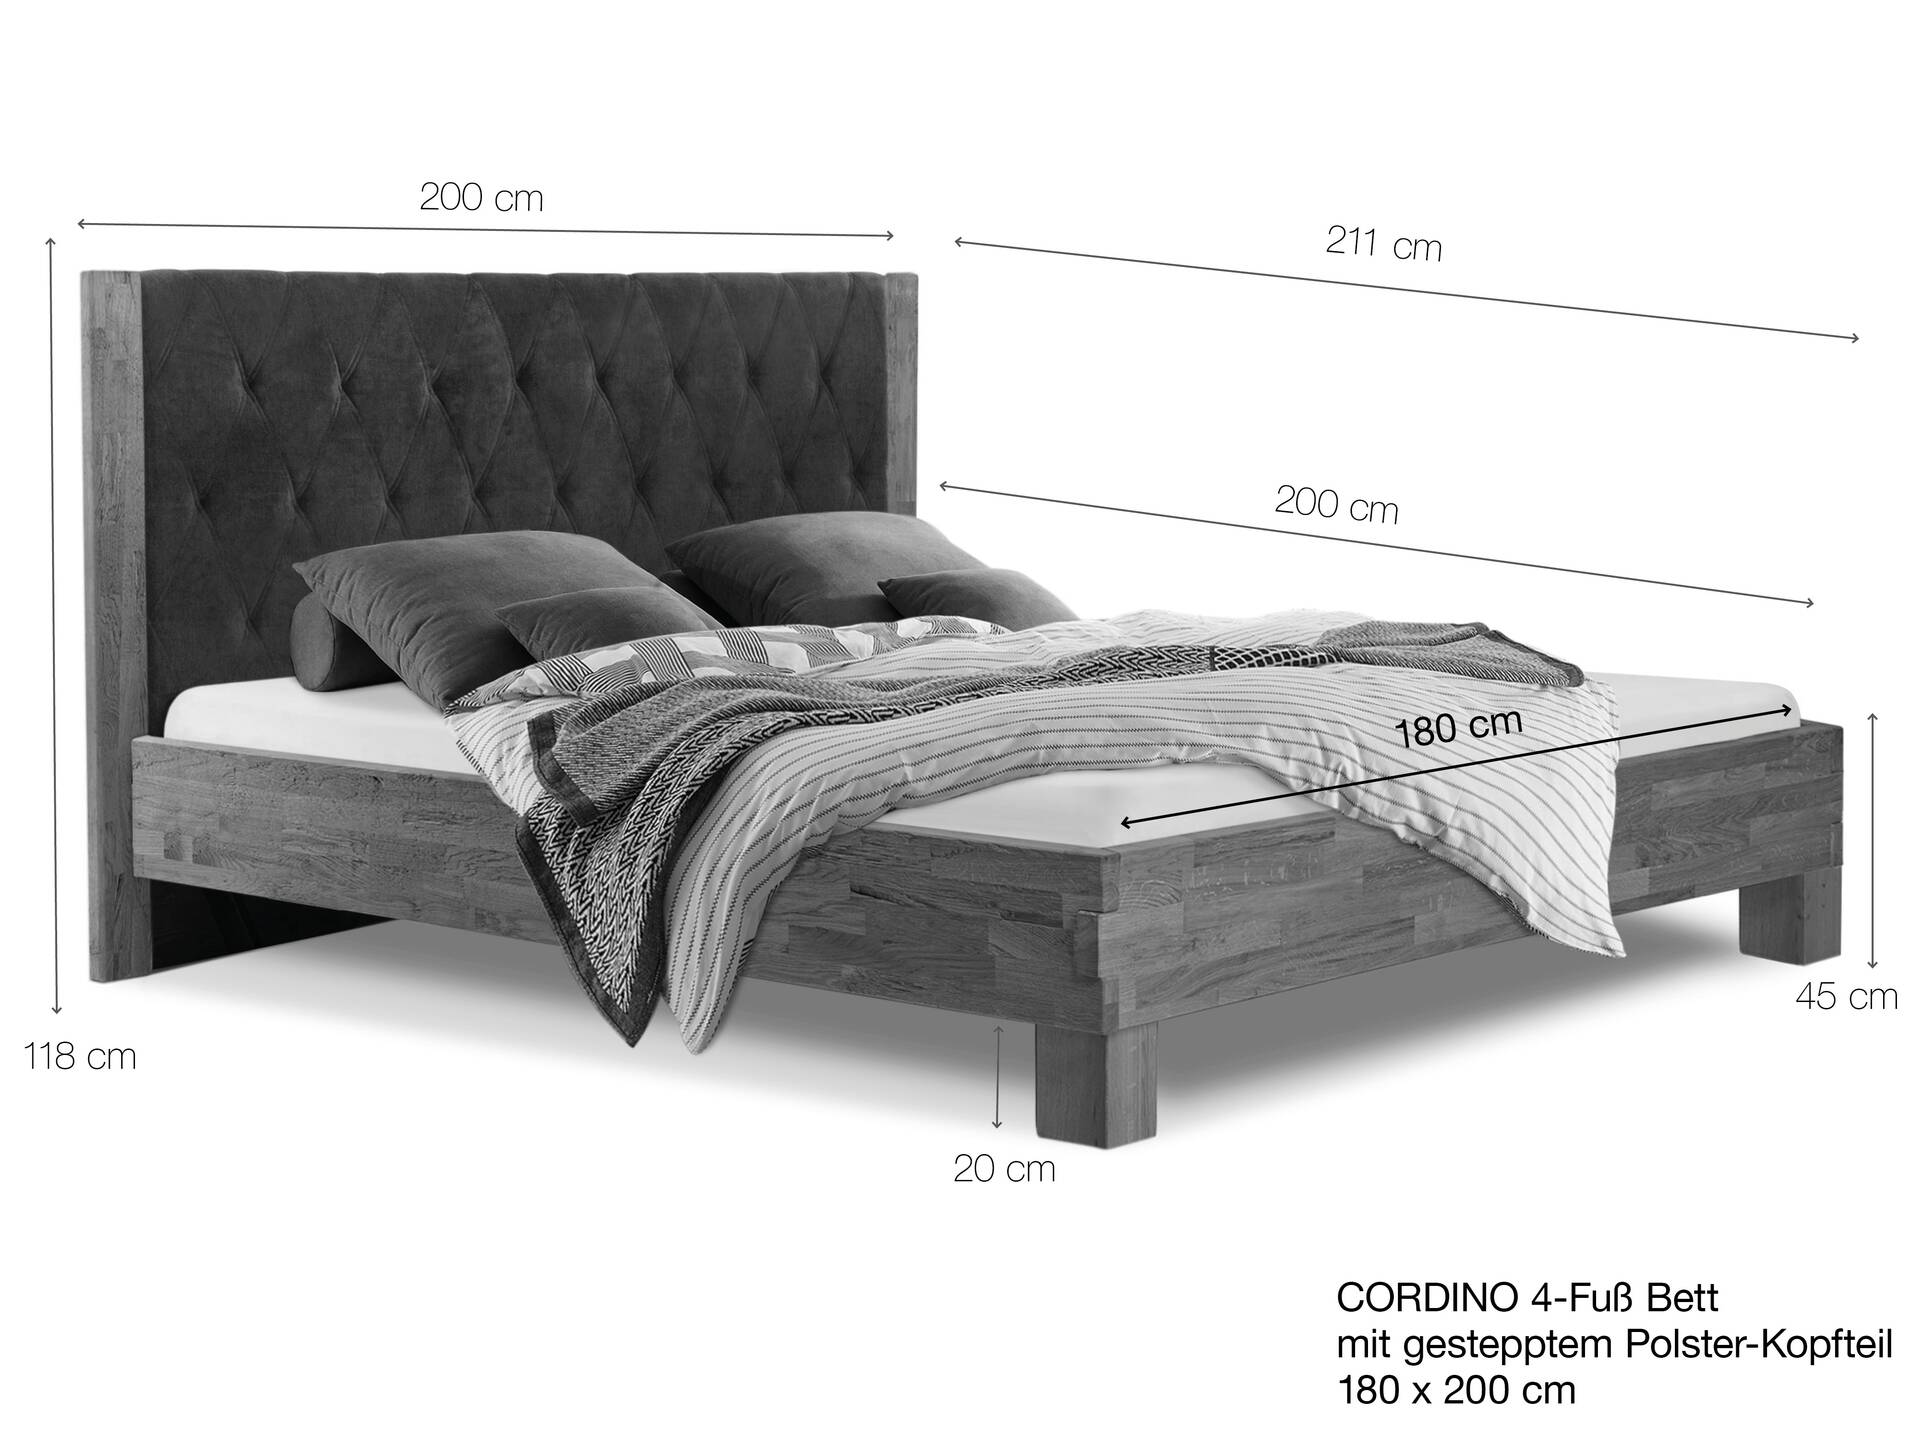 CORDINO 4-Fuß-Bett aus Eiche mit gestepptem Polster-Kopfteil, Material Massivholz 180 x 200 cm | Eiche unbehandelt | Stoff Braun | gebürstet